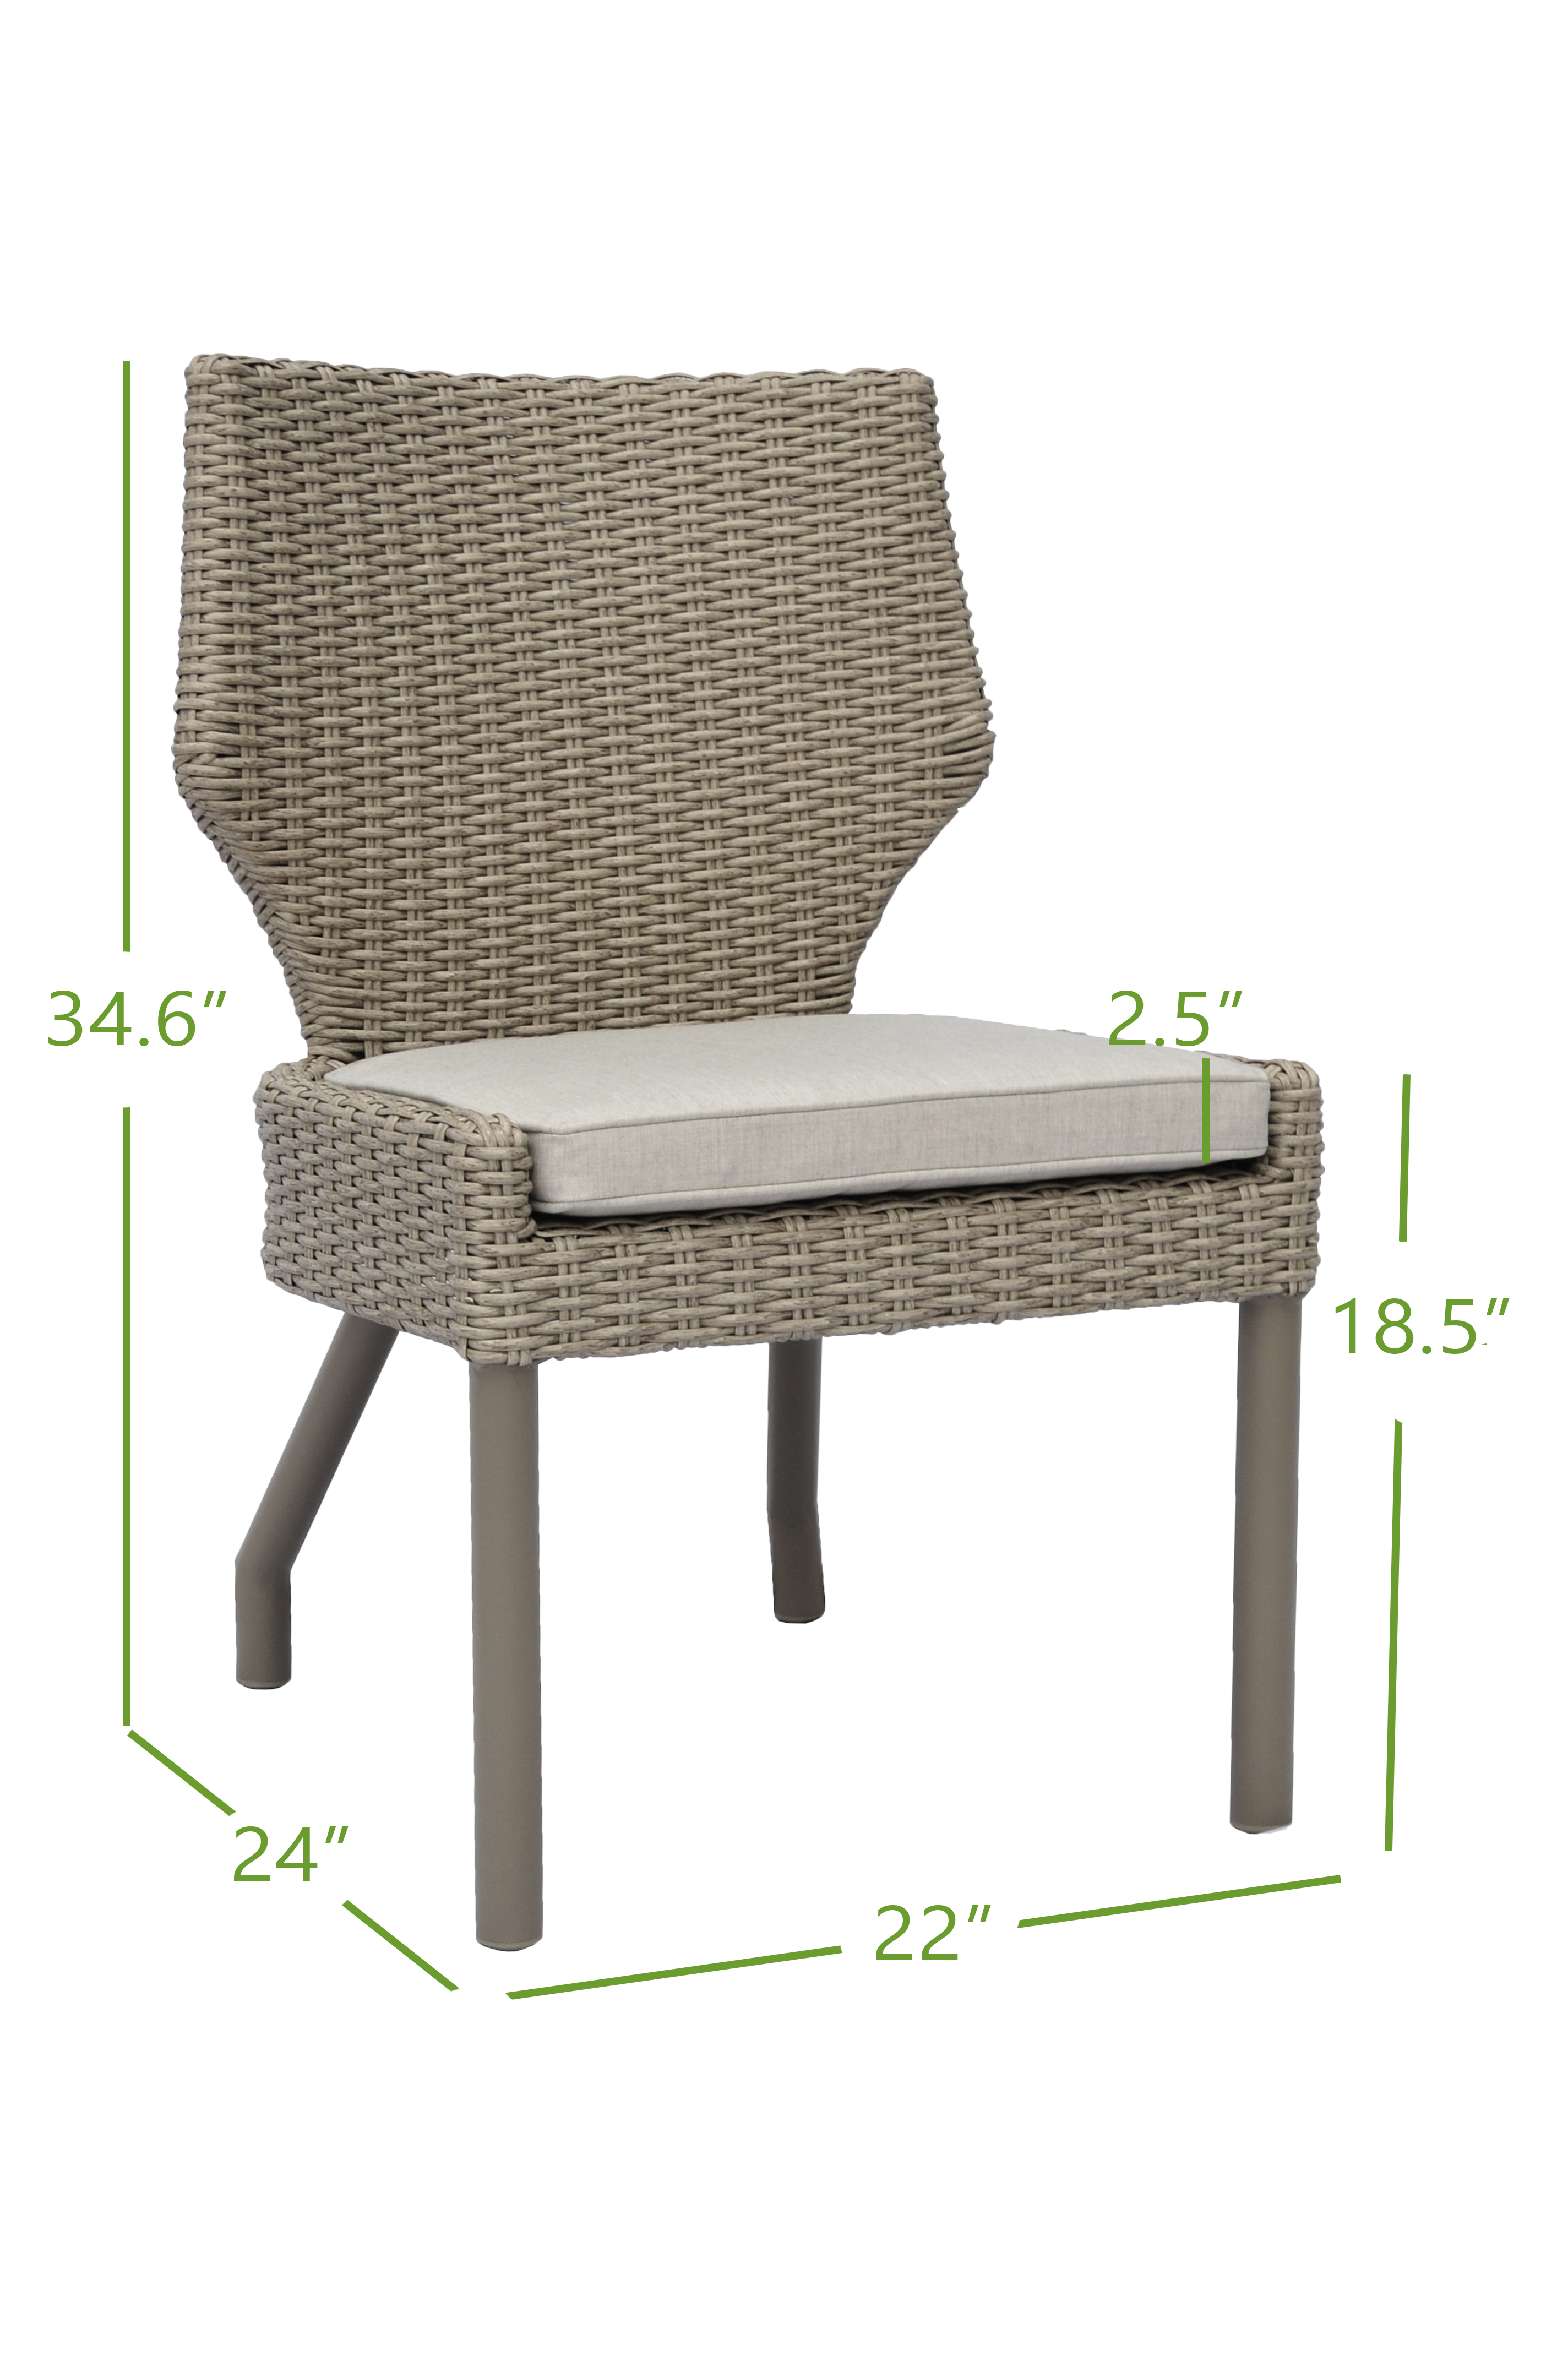 armless chair dimensions